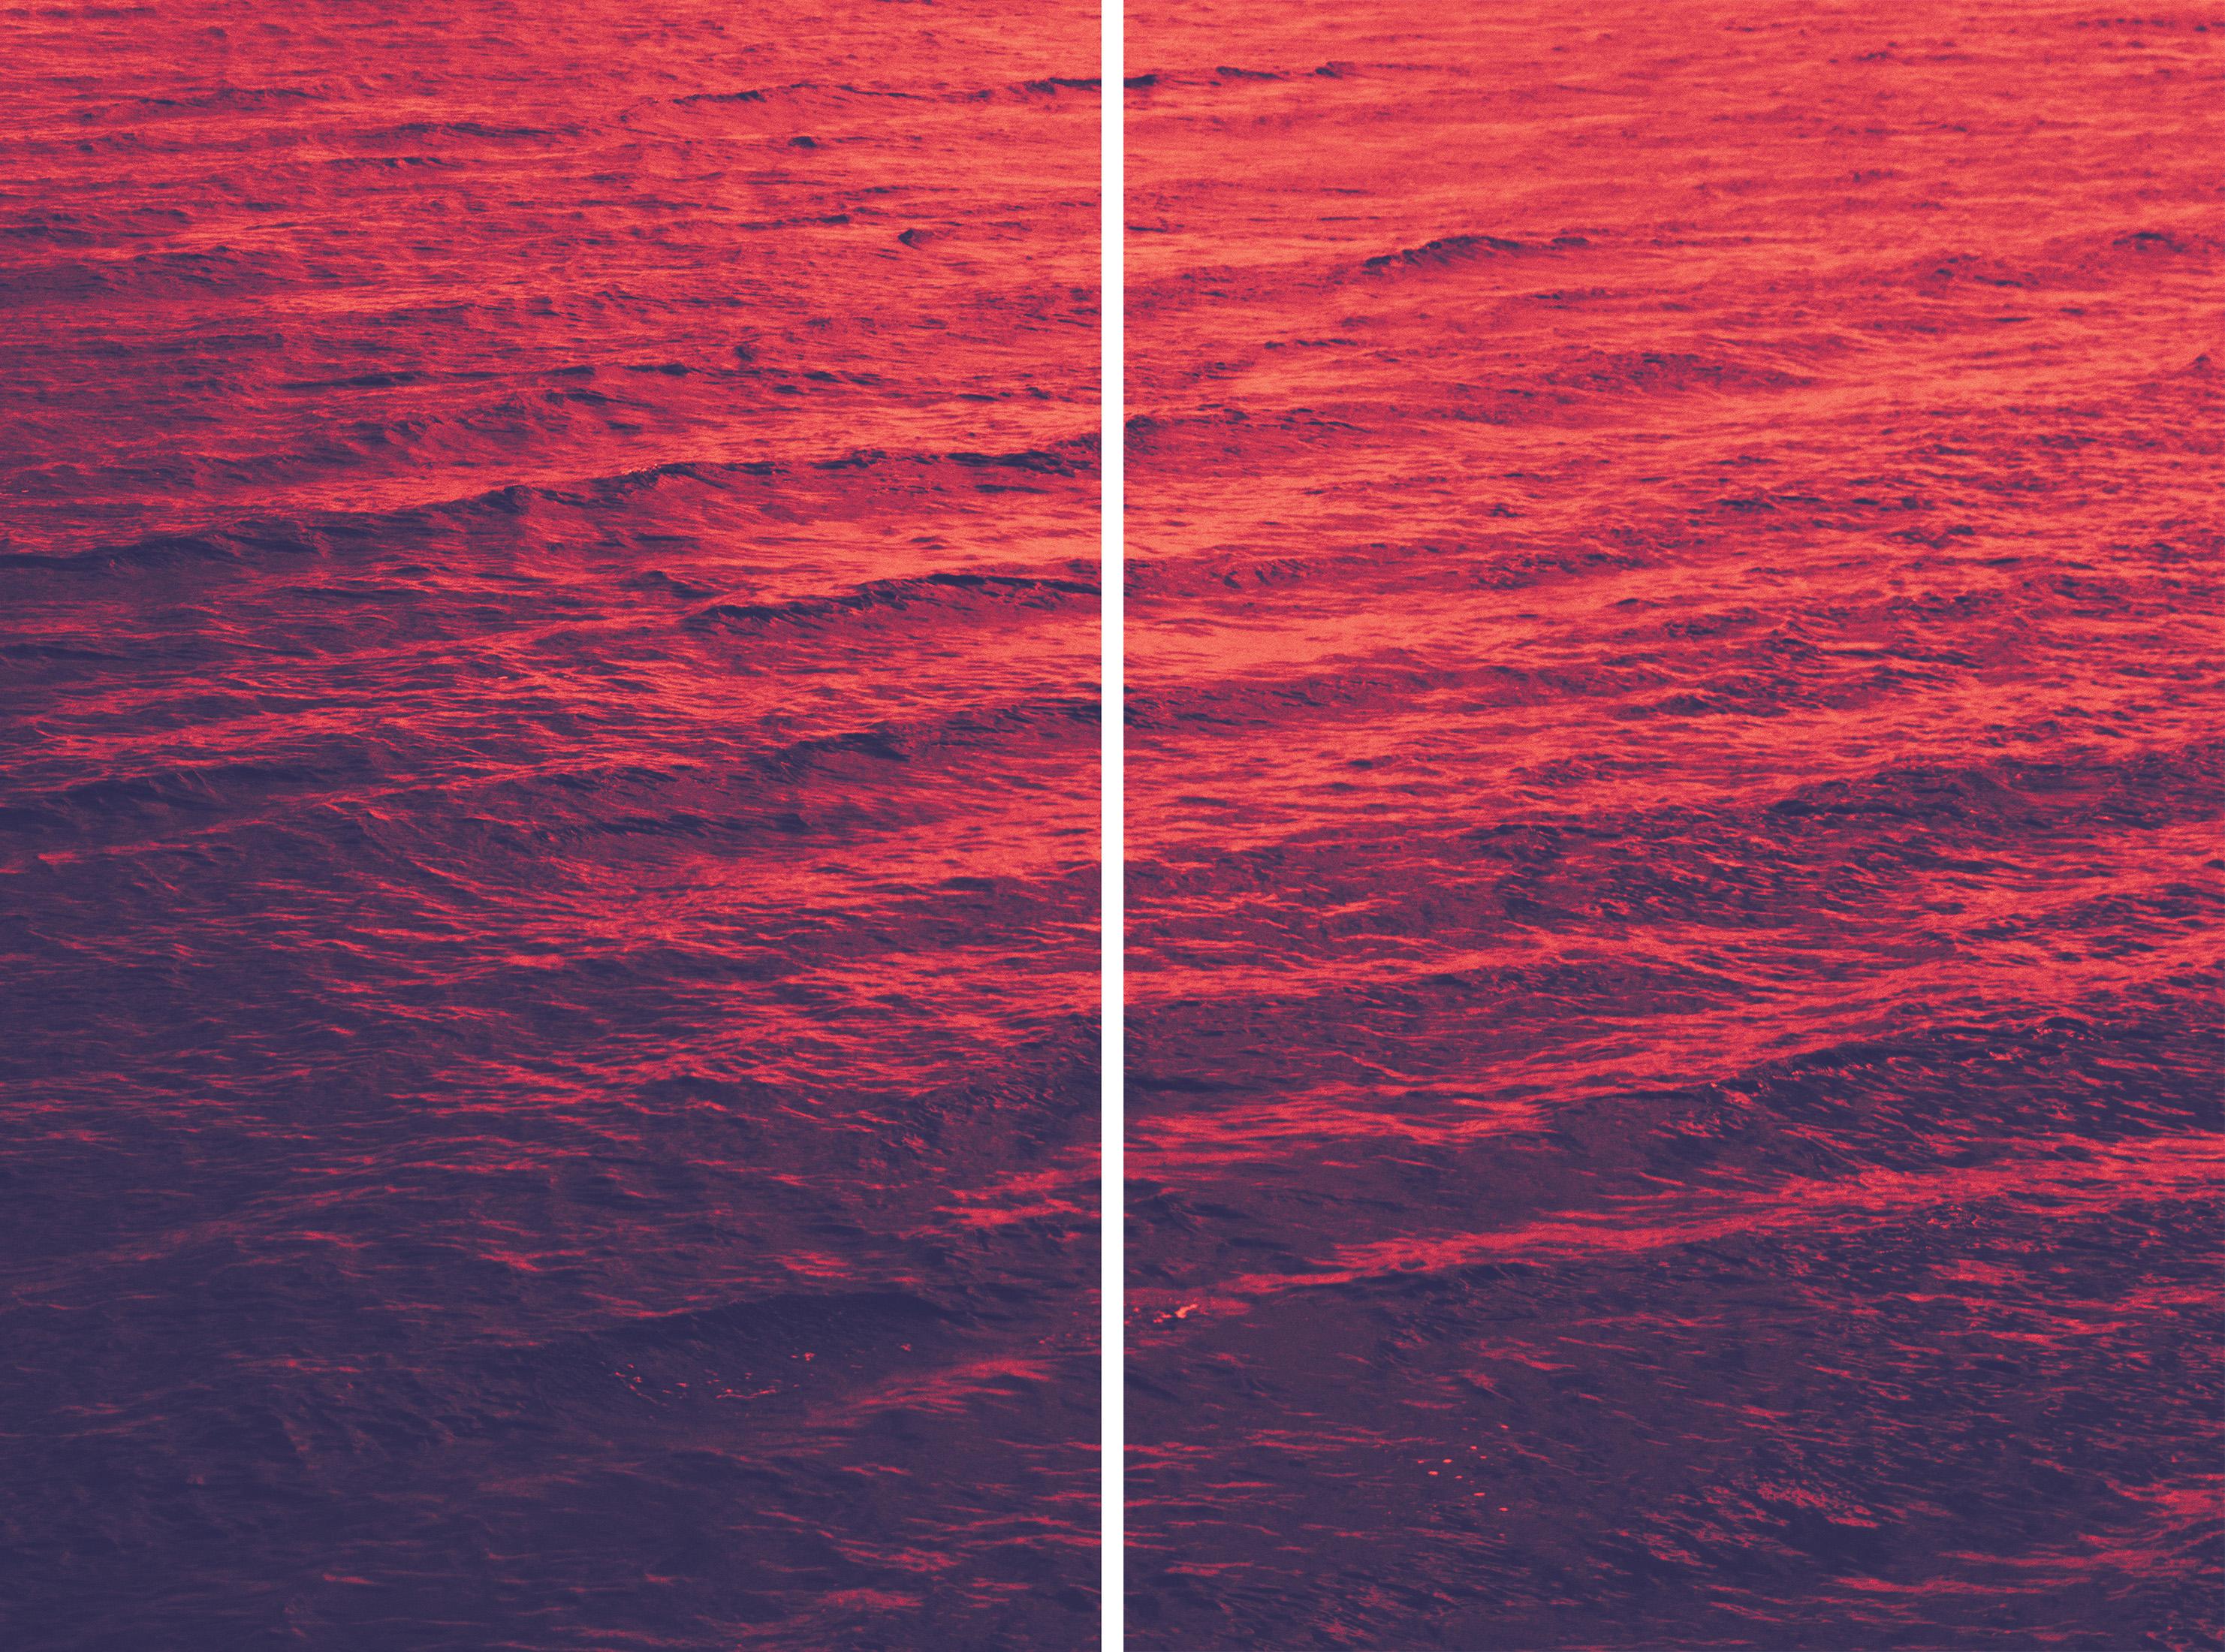 Rotes Meer, Abstraktes Diptychon, Giclée Druck Goldenes Rosa, Blaues Mittelmeer Meereslandschaft